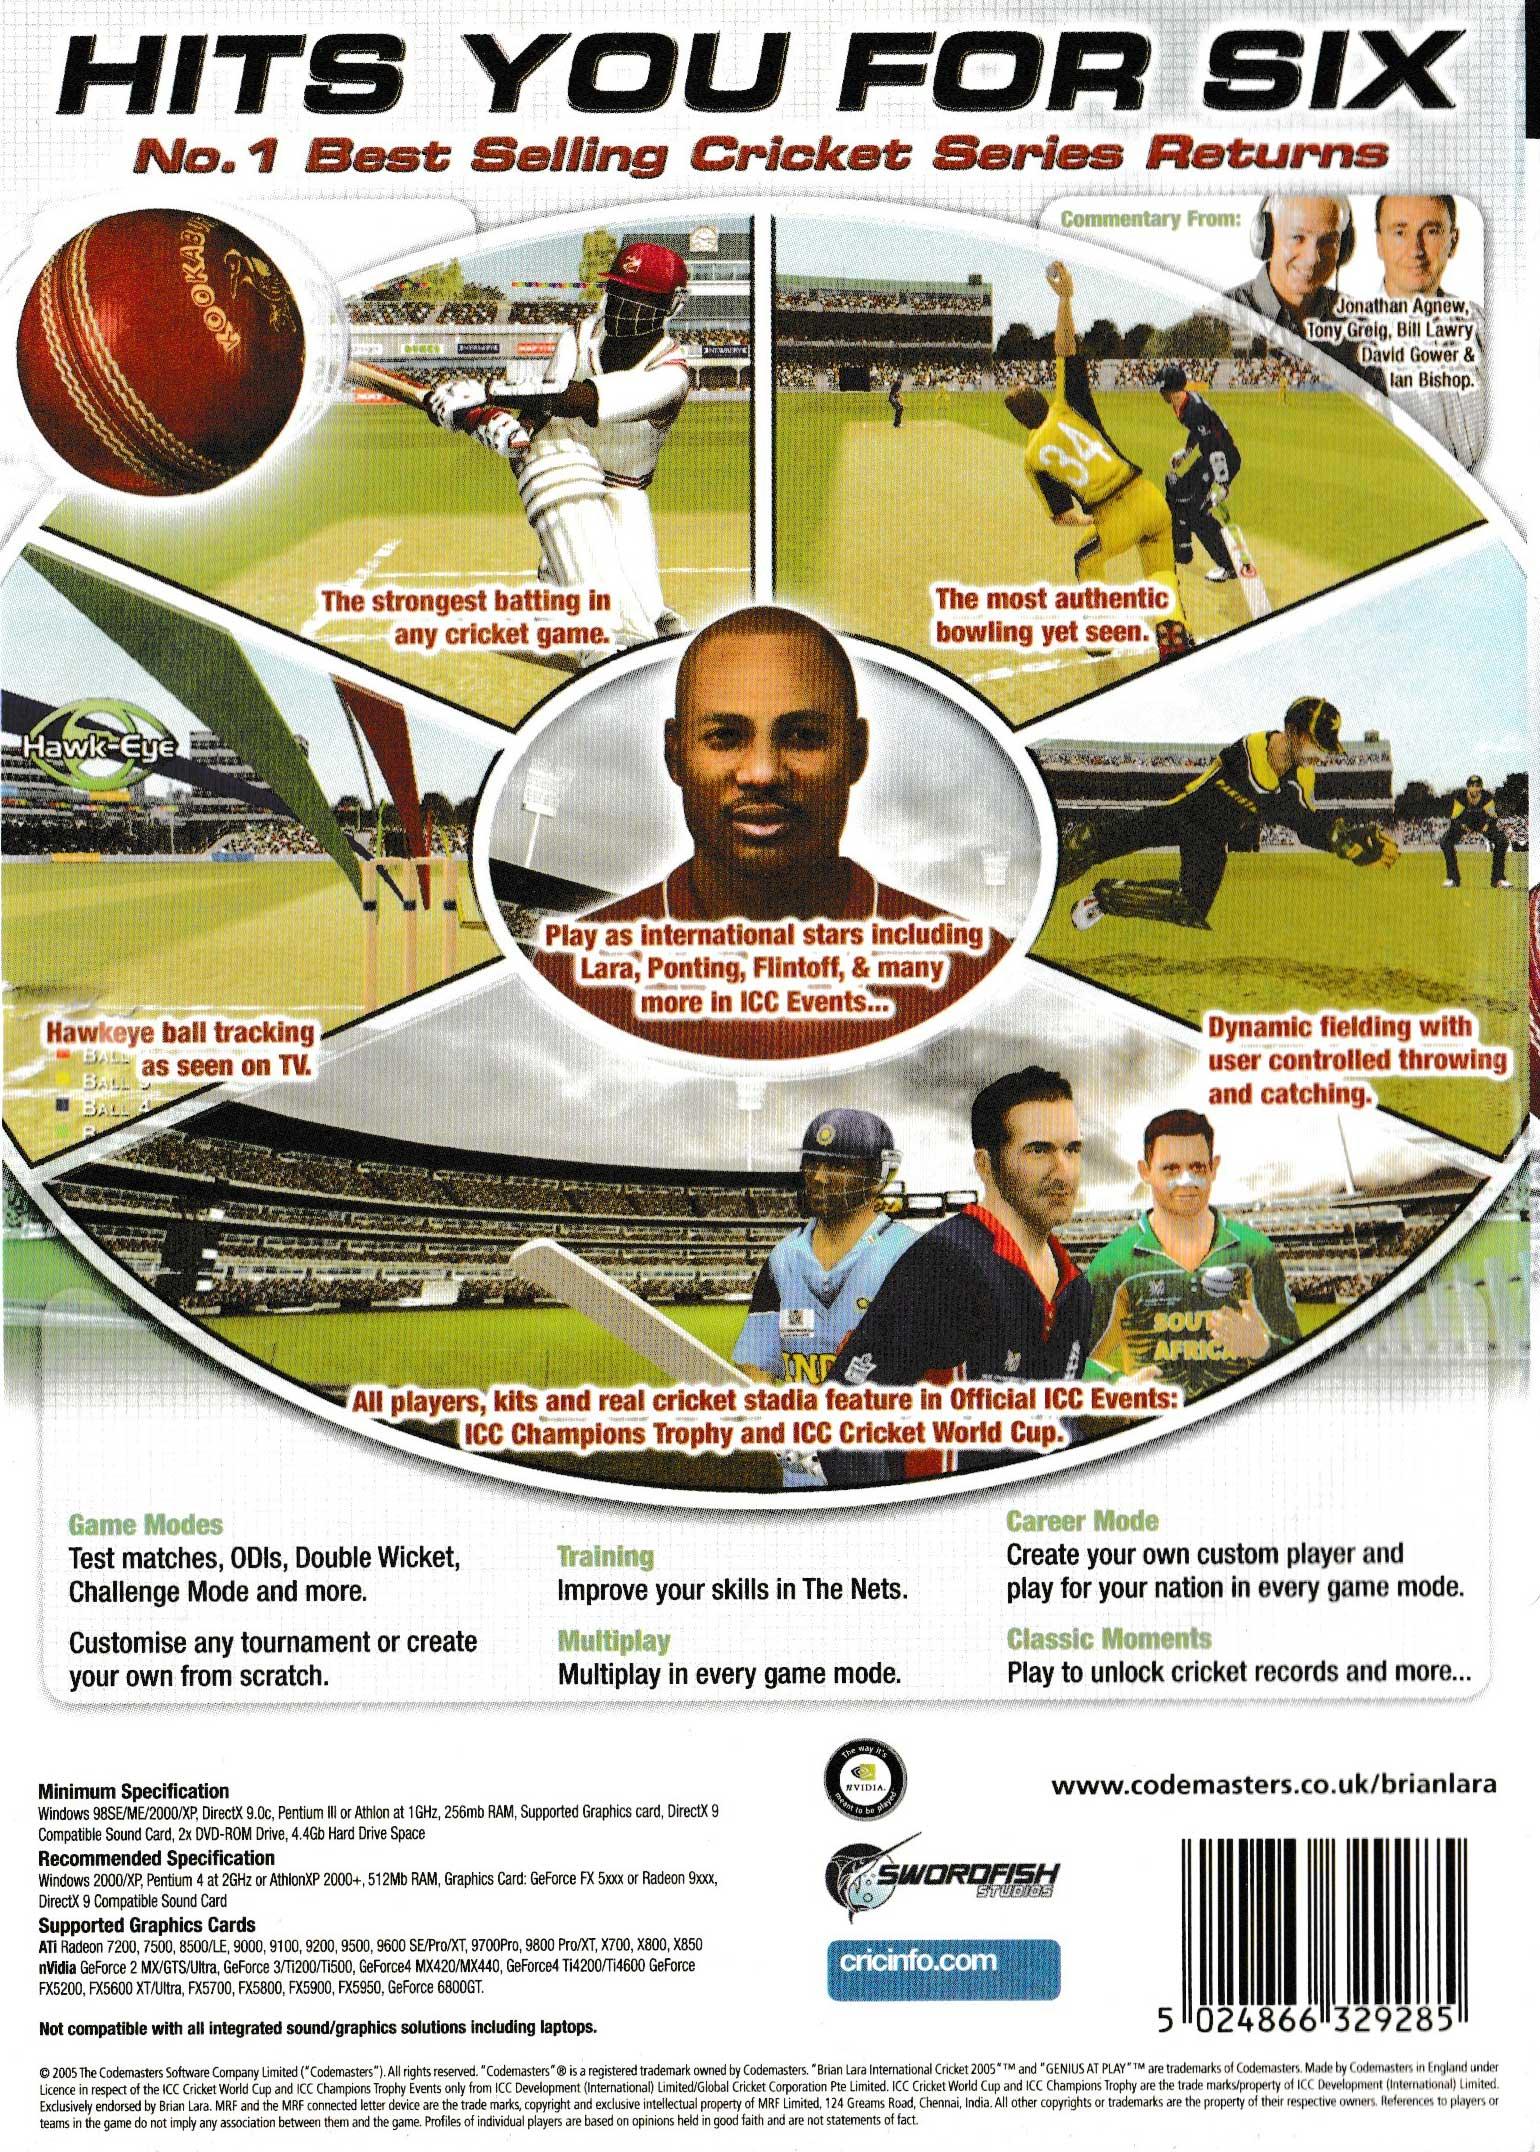 Brian Lara International Cricket 2005 